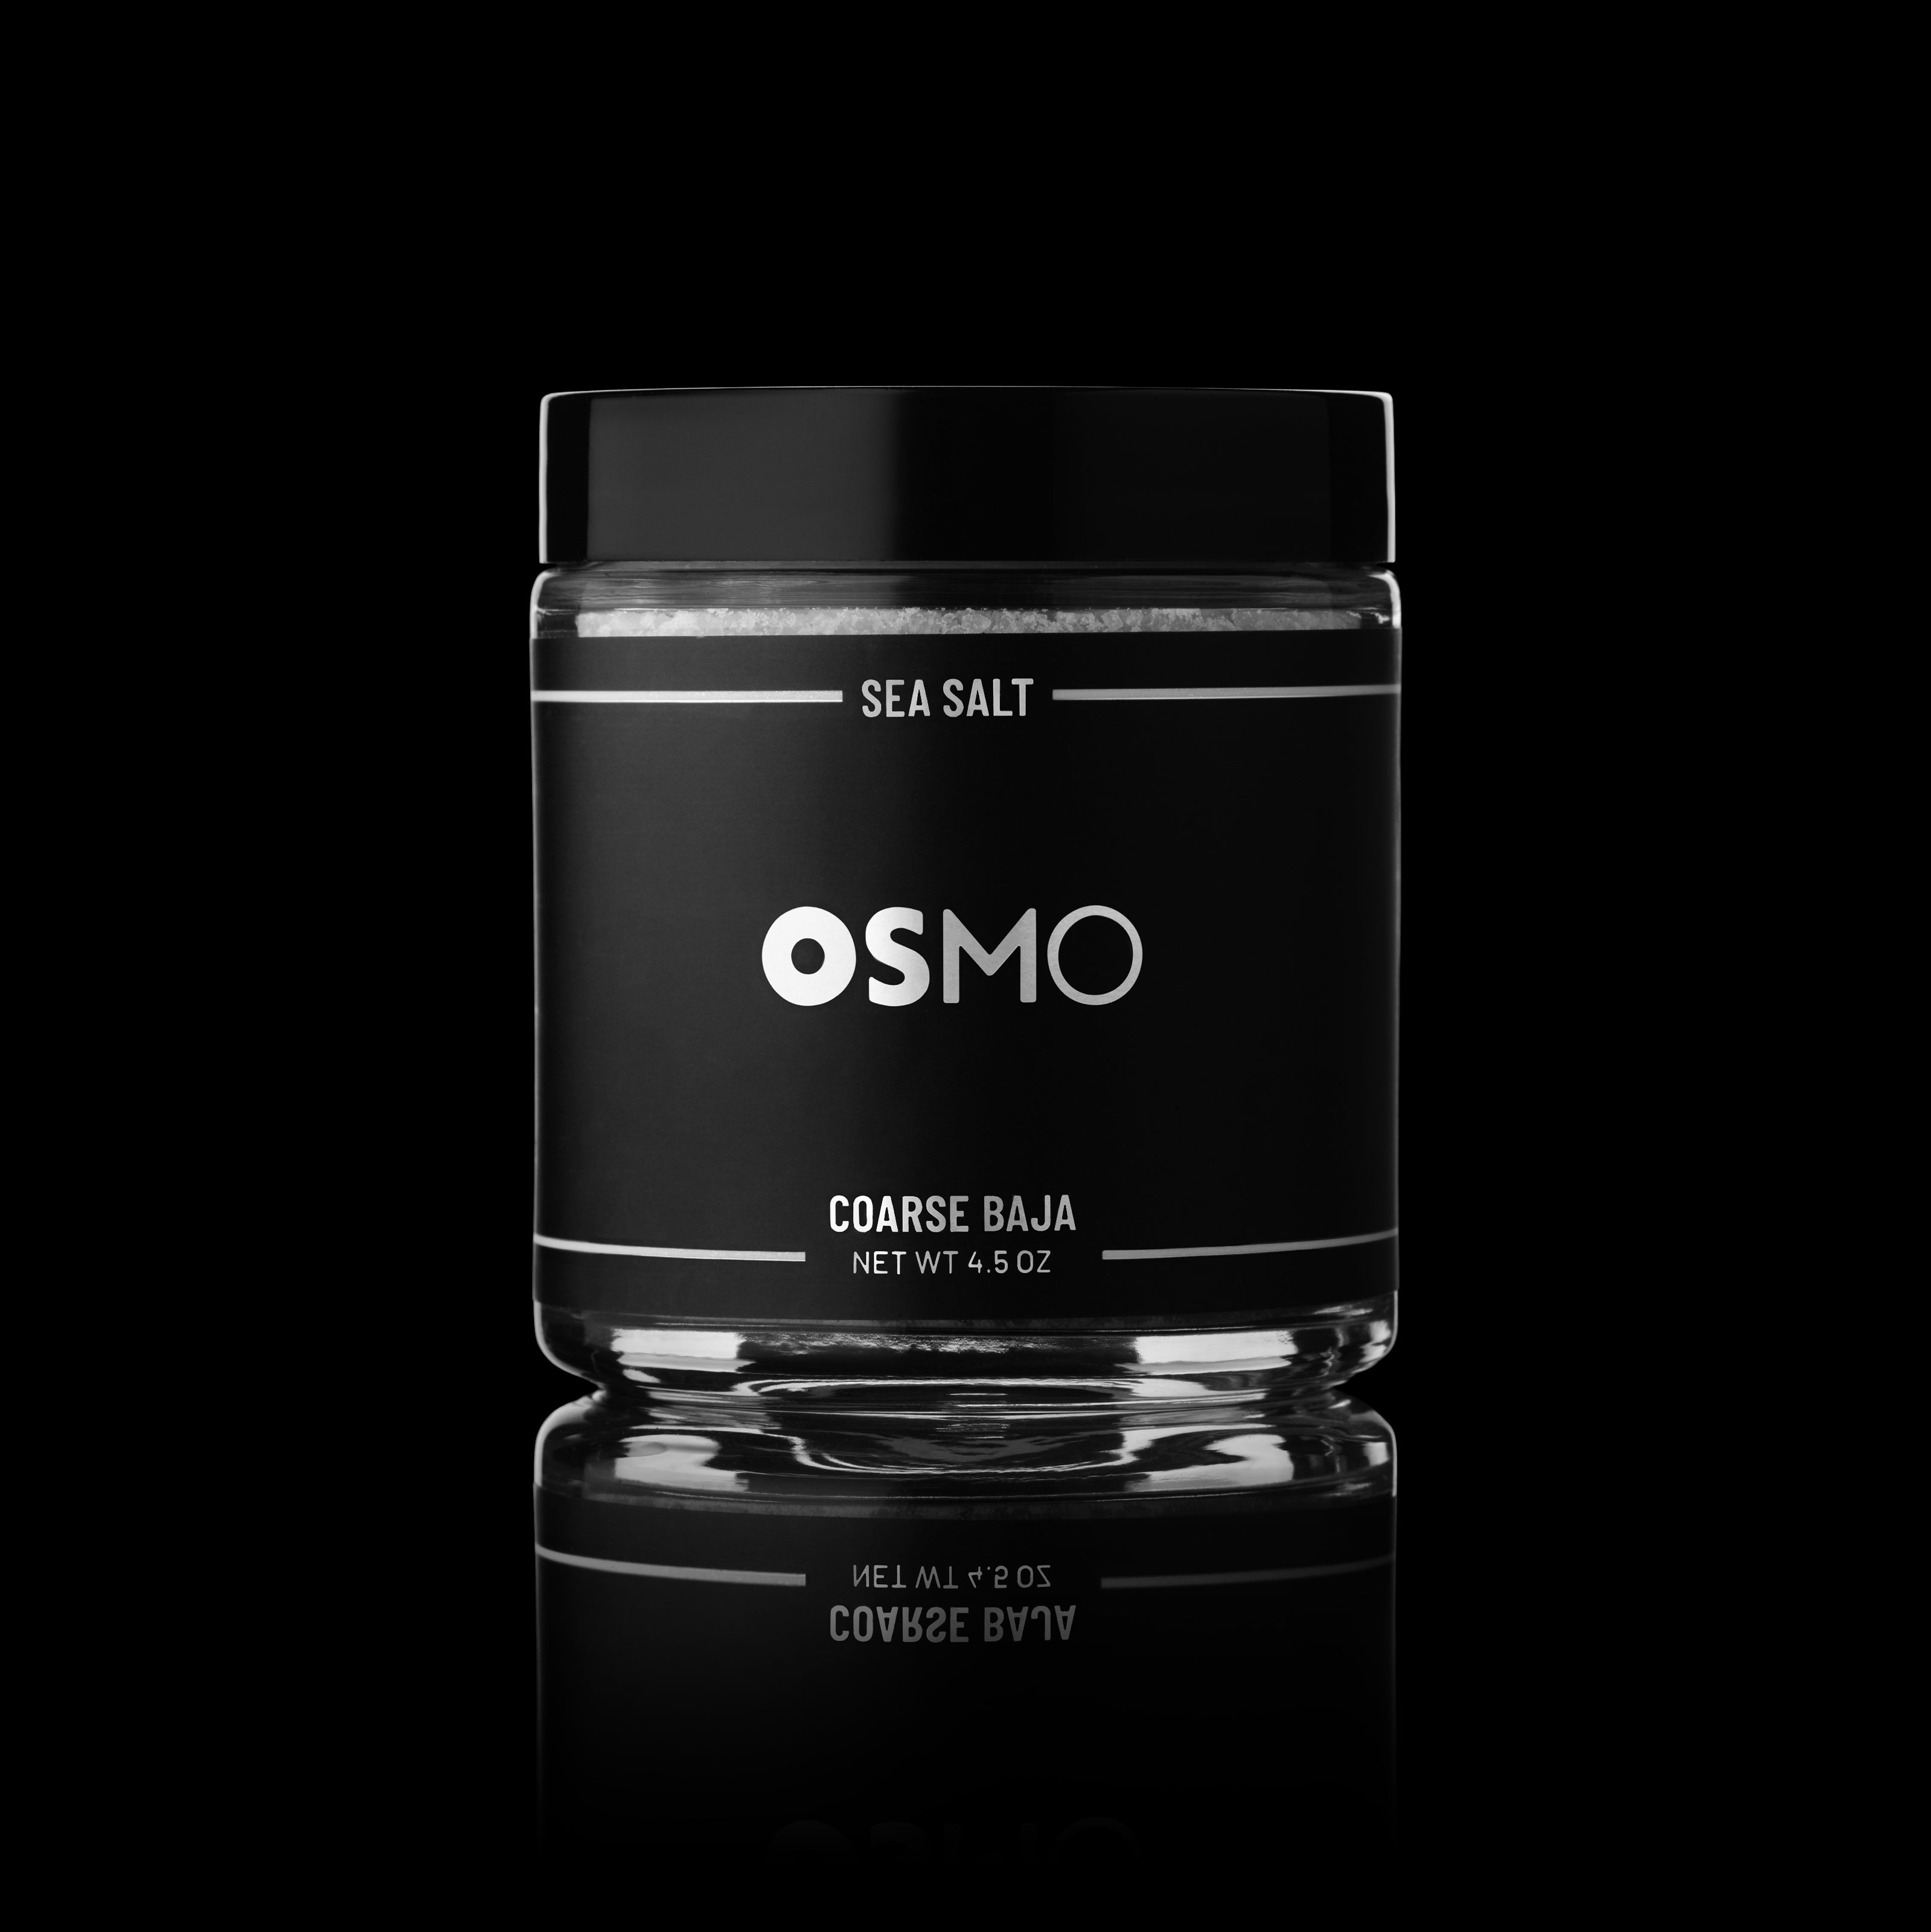 Osmo Salt - Applewood Smoked Sea Salt